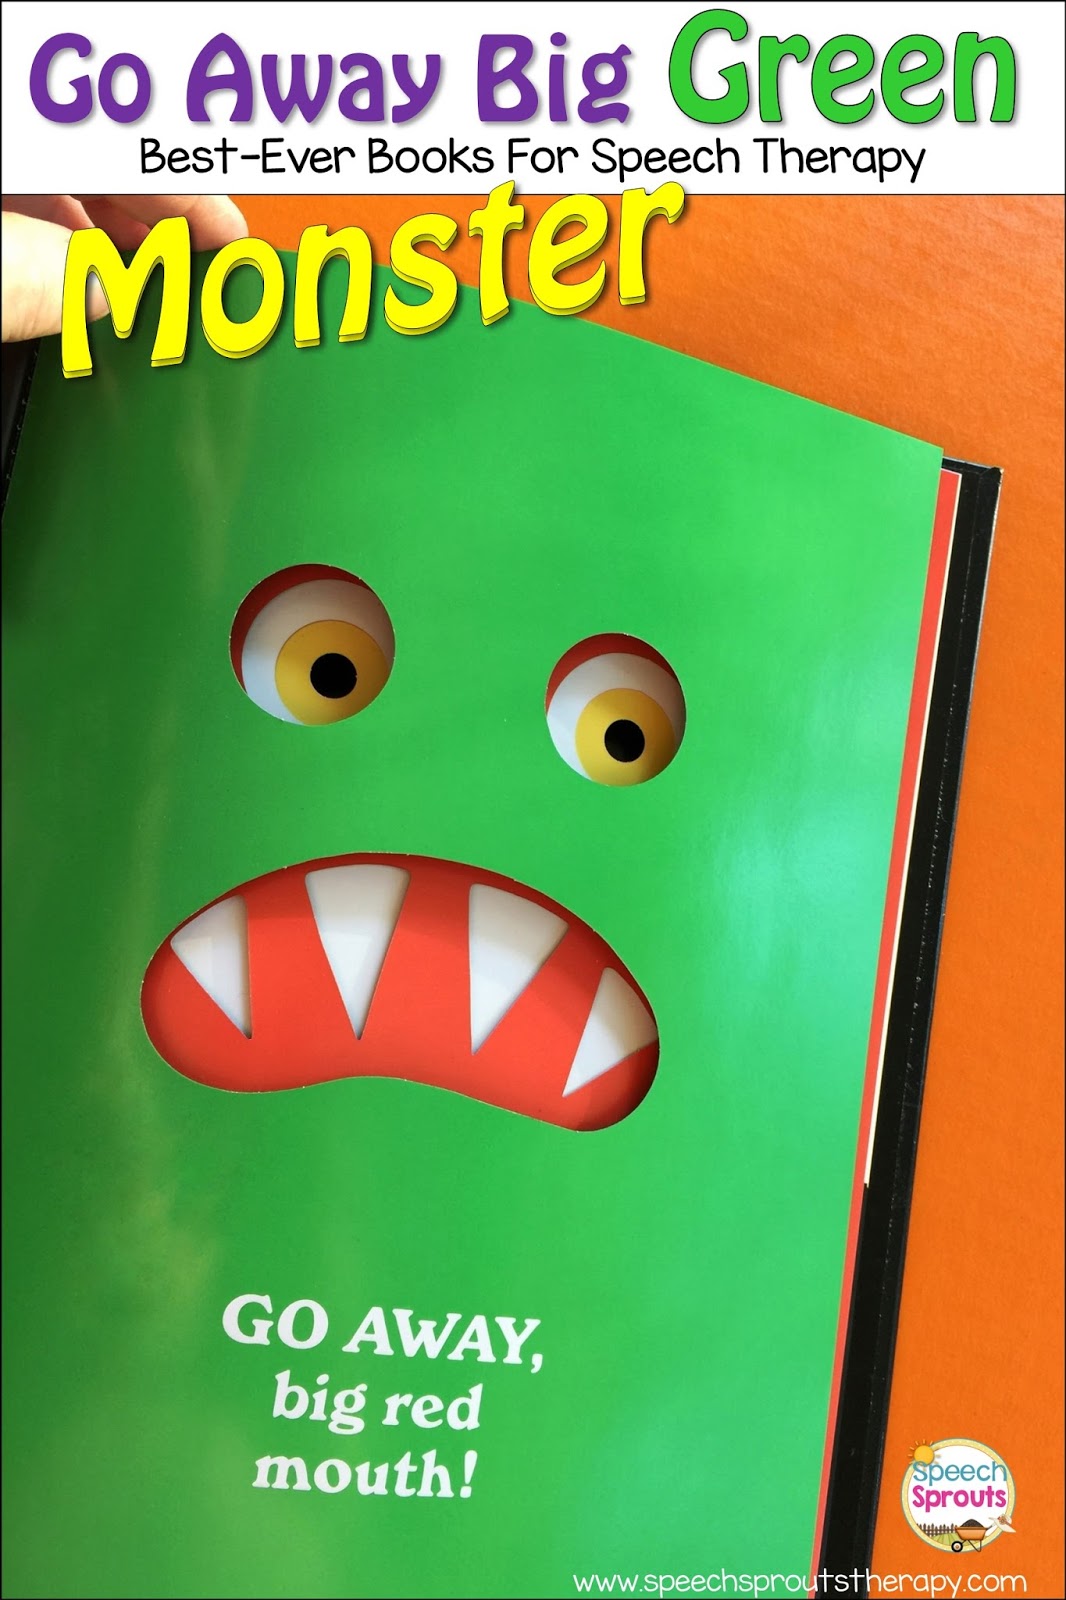 Speech Sprouts Go Away Big Green Monster BestEver Books For